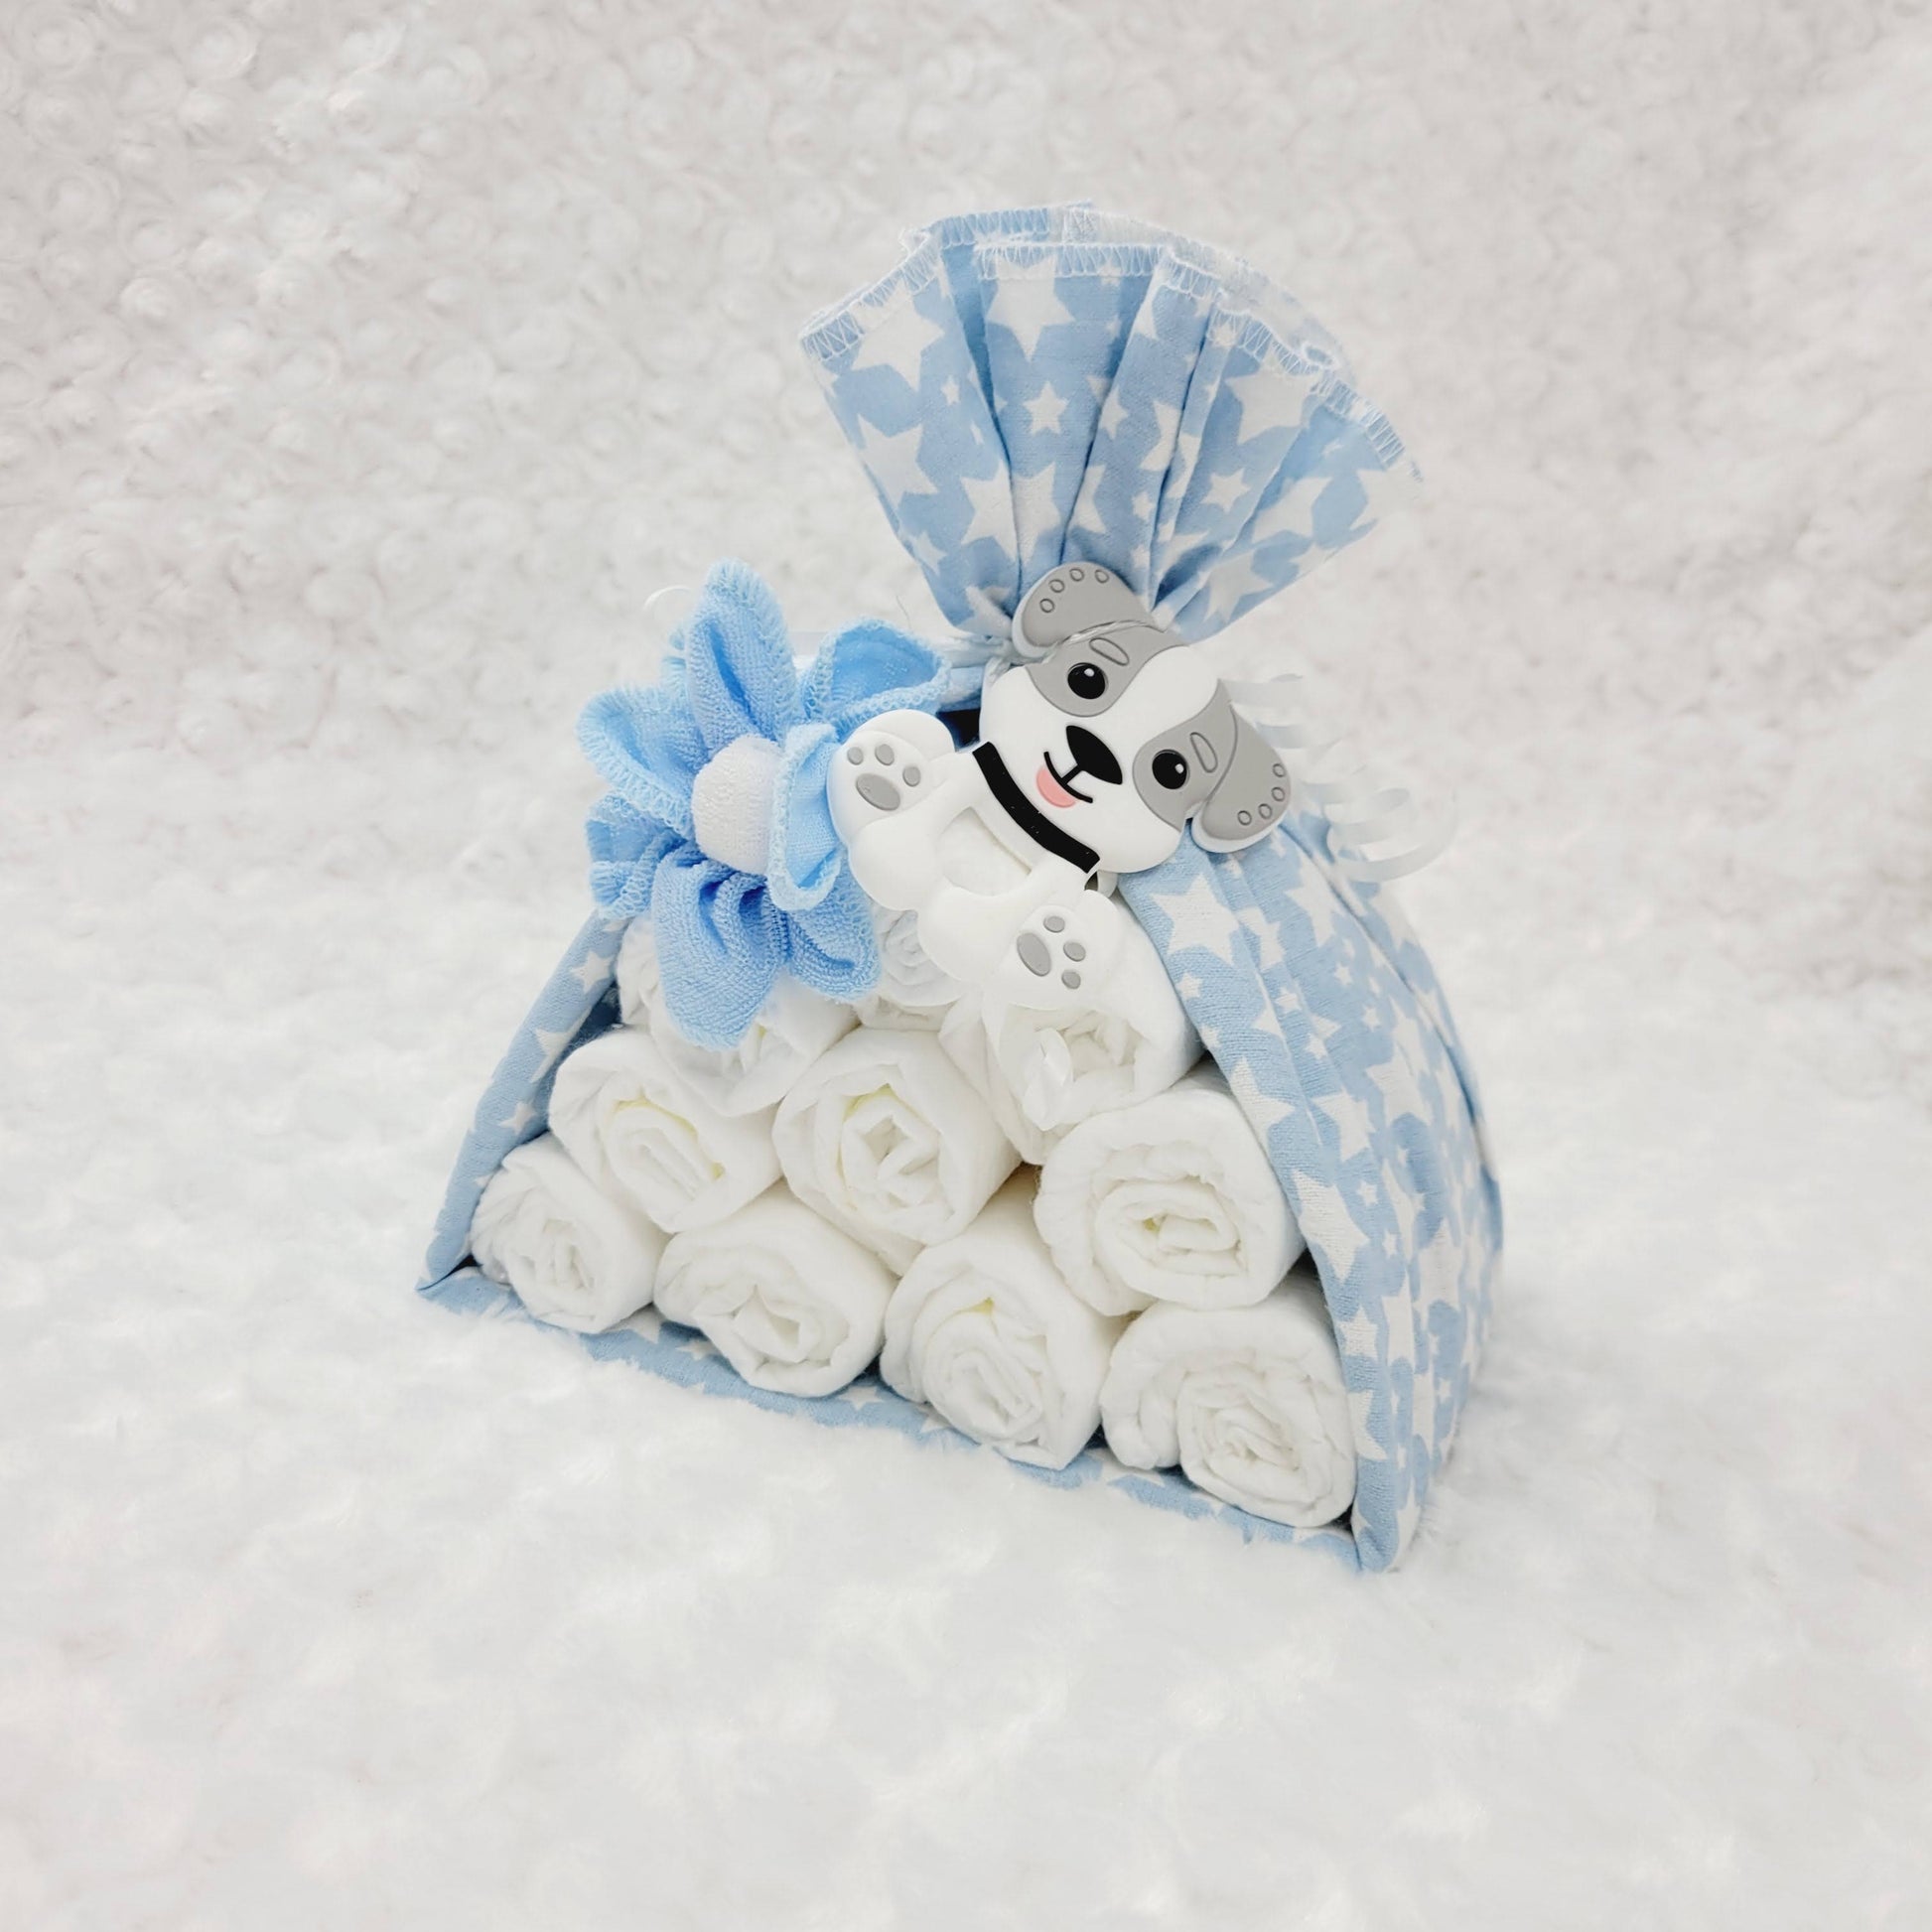 Baluchon avec couverture bleu étoilé blanc, contenant 10 couches de taille #2 avec une débarbouillettes bleu et une blanche. Complété d'un jouet de dentition en silicone en former de chien.